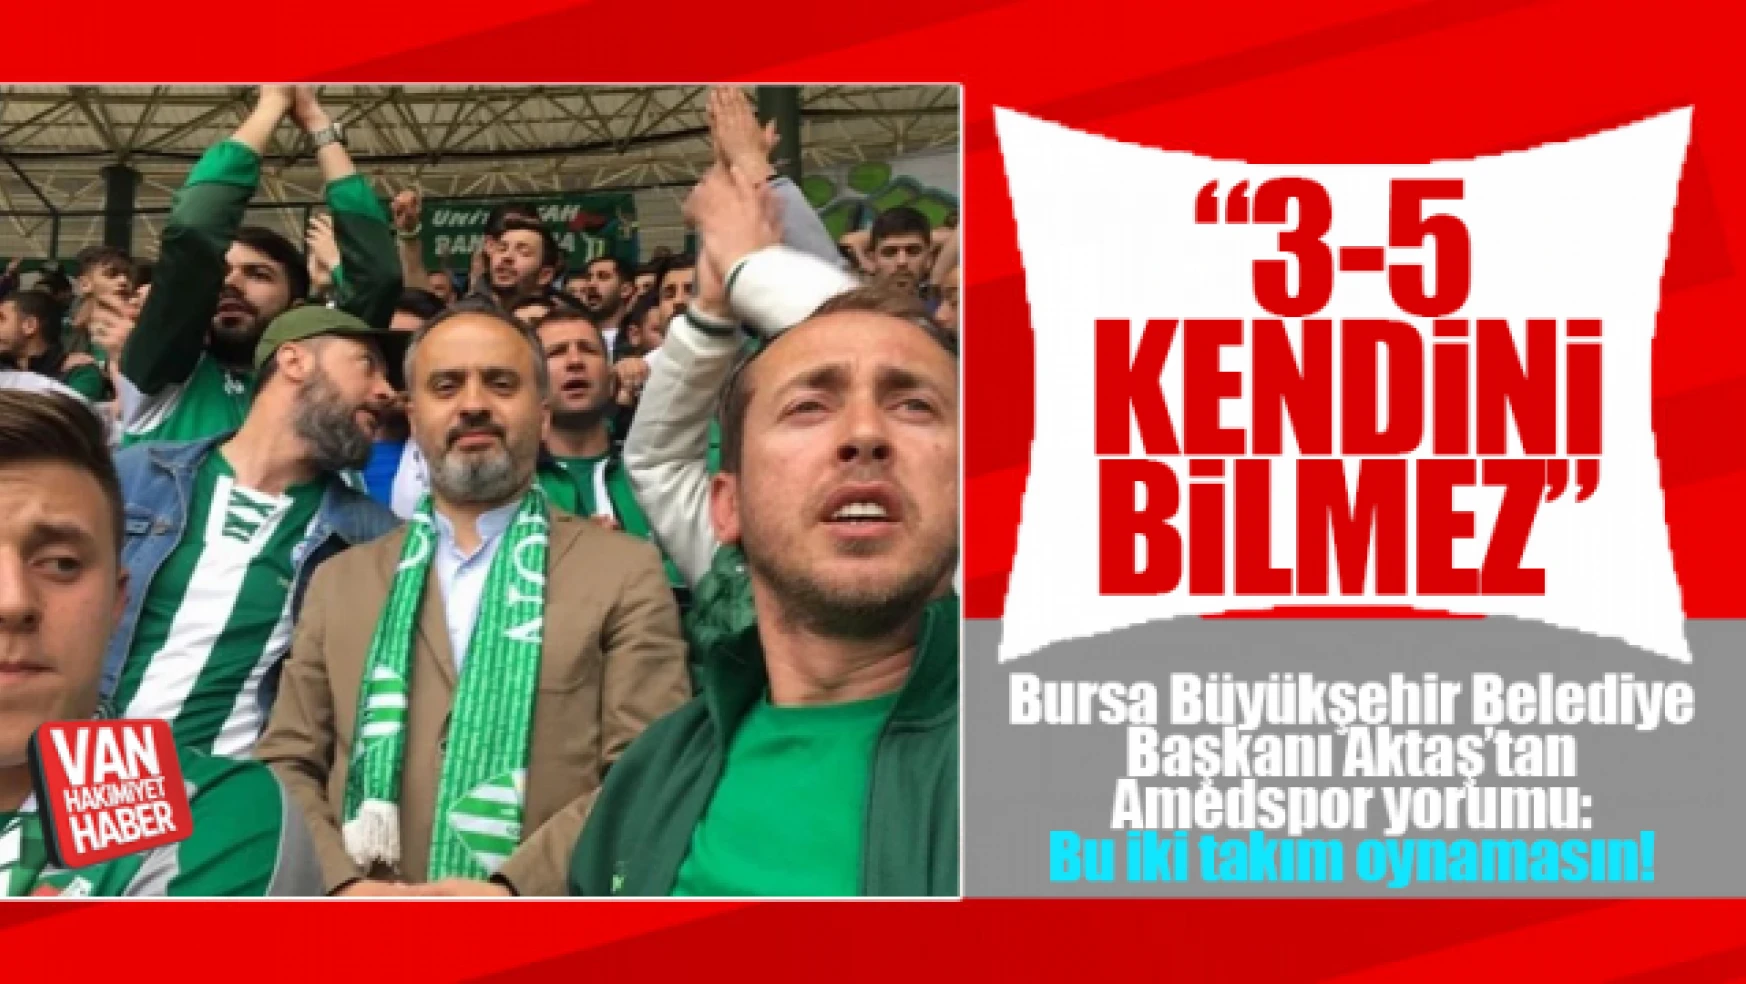 Bursa Başkanı Aktaş'tan maç yorumu: Maçın sıkıntılı olacağı belliydi